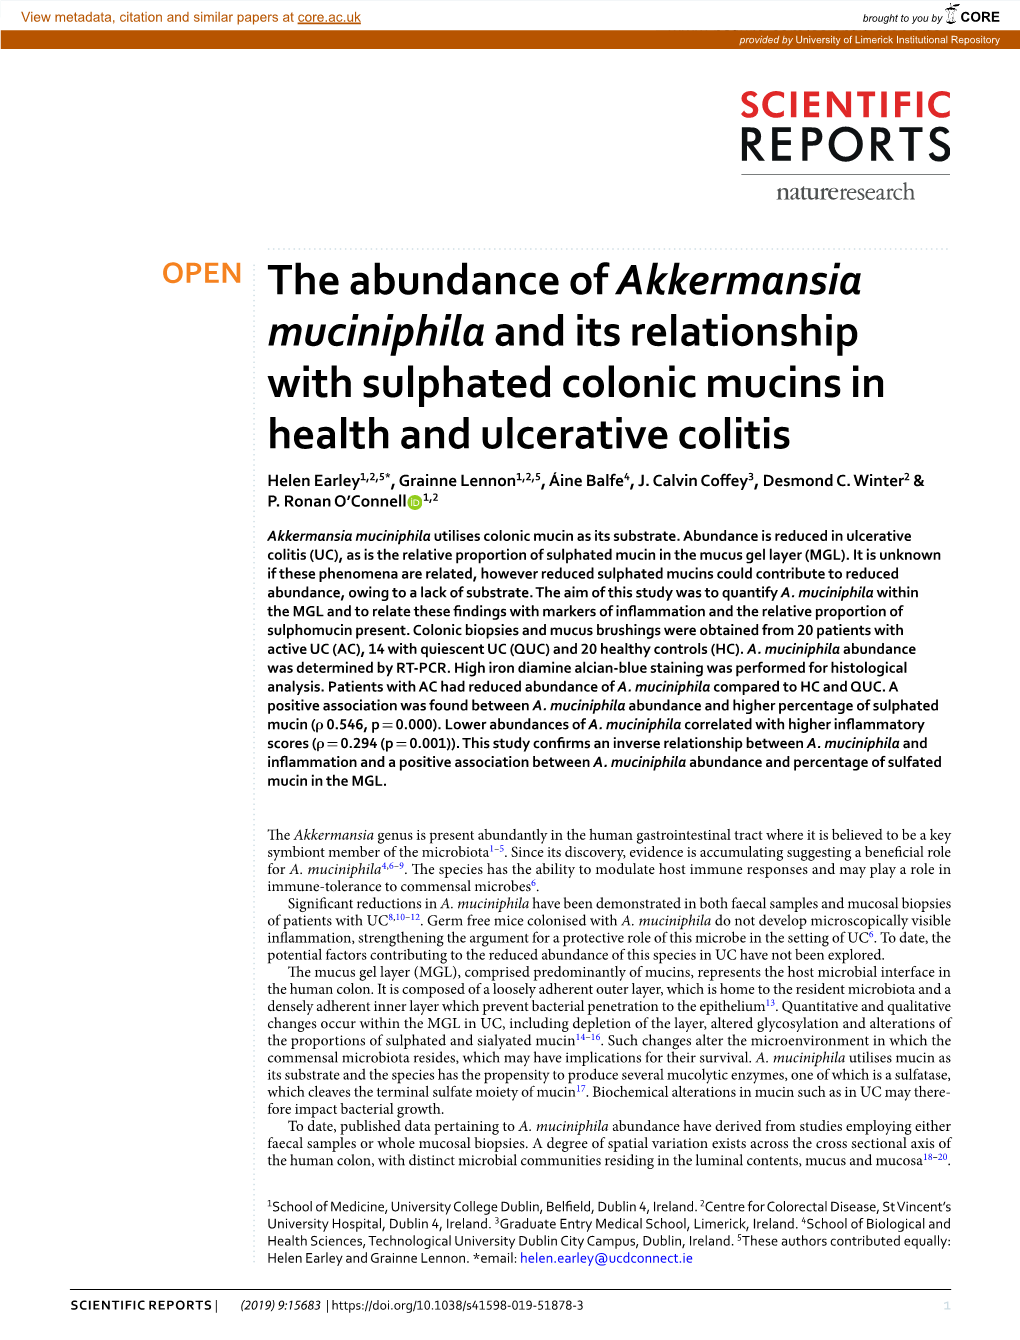 The Abundance of Akkermansia Muciniphila and Its